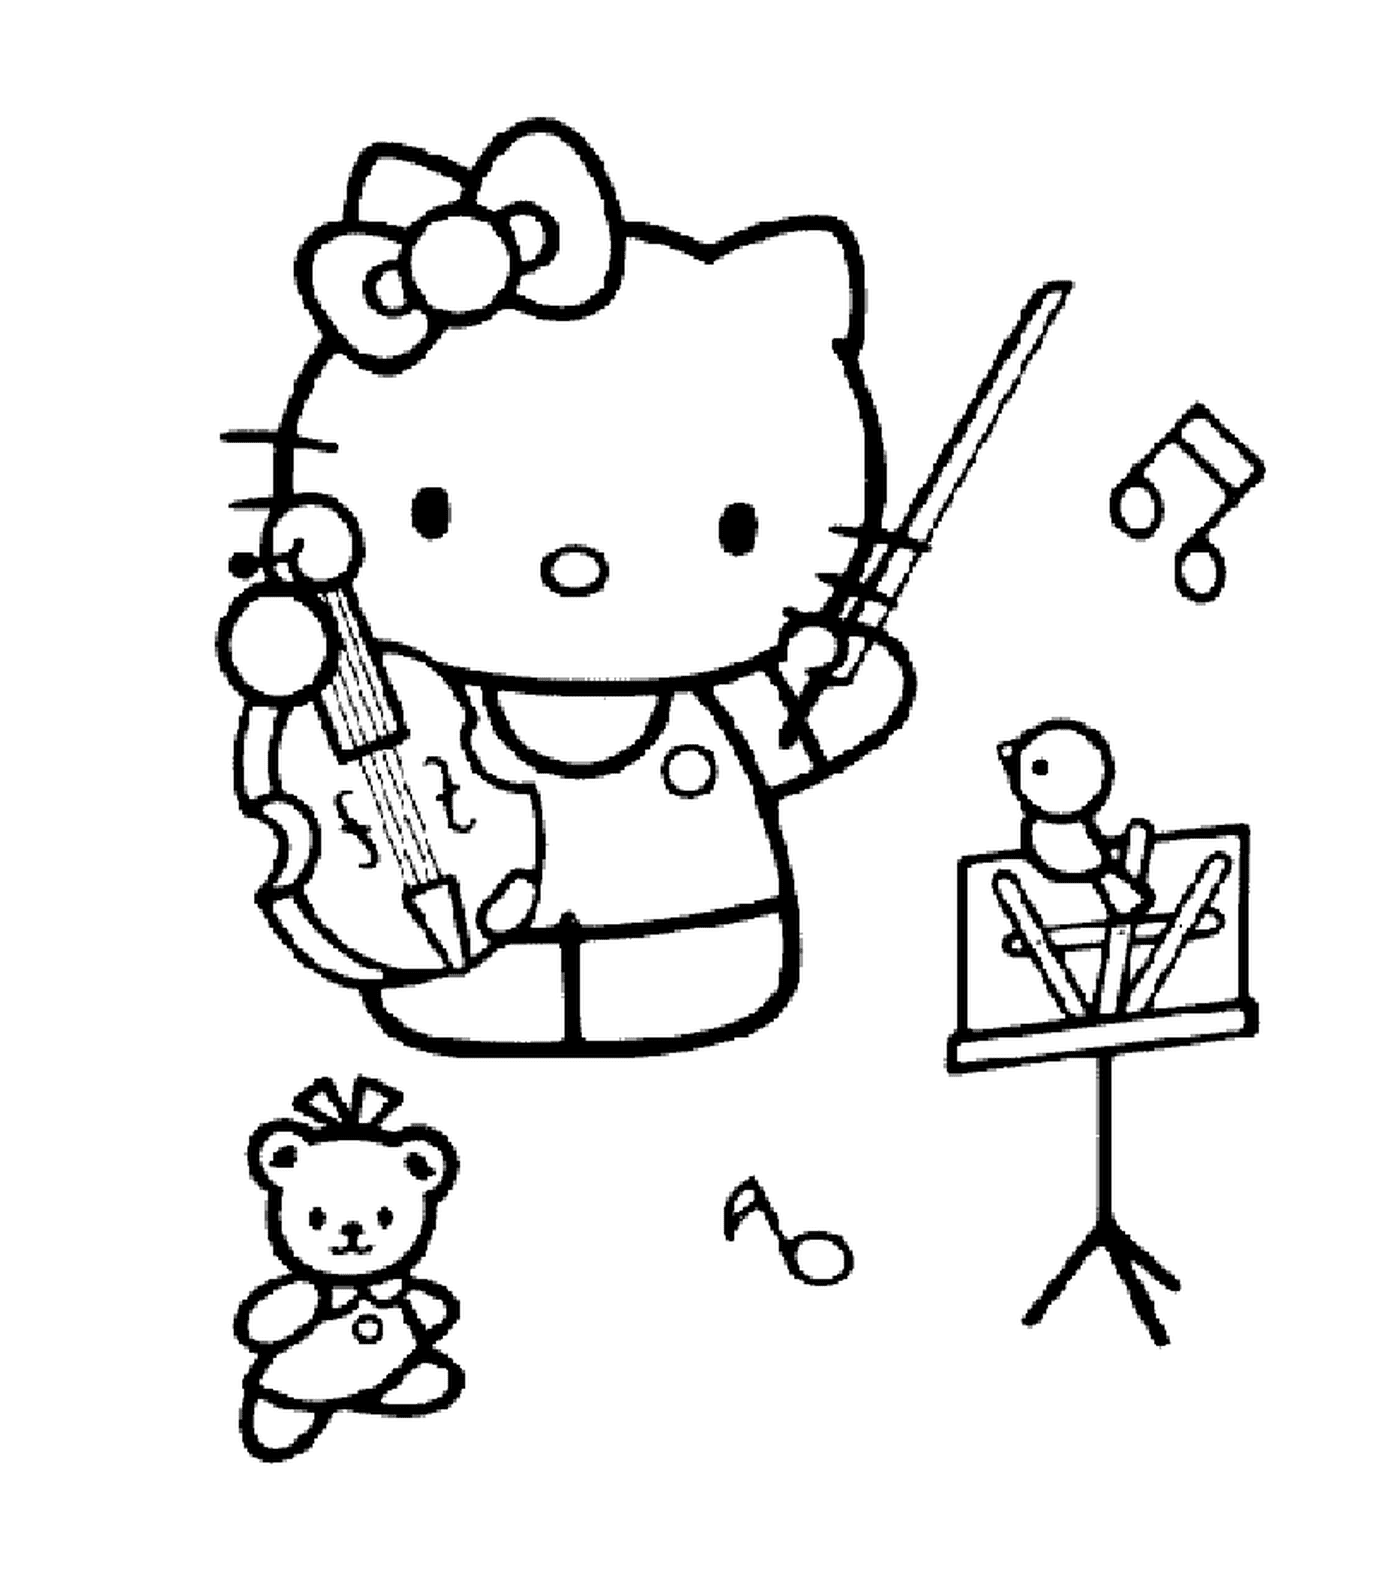  Здравствуйте, Китти играет на музыкальном инструменте 